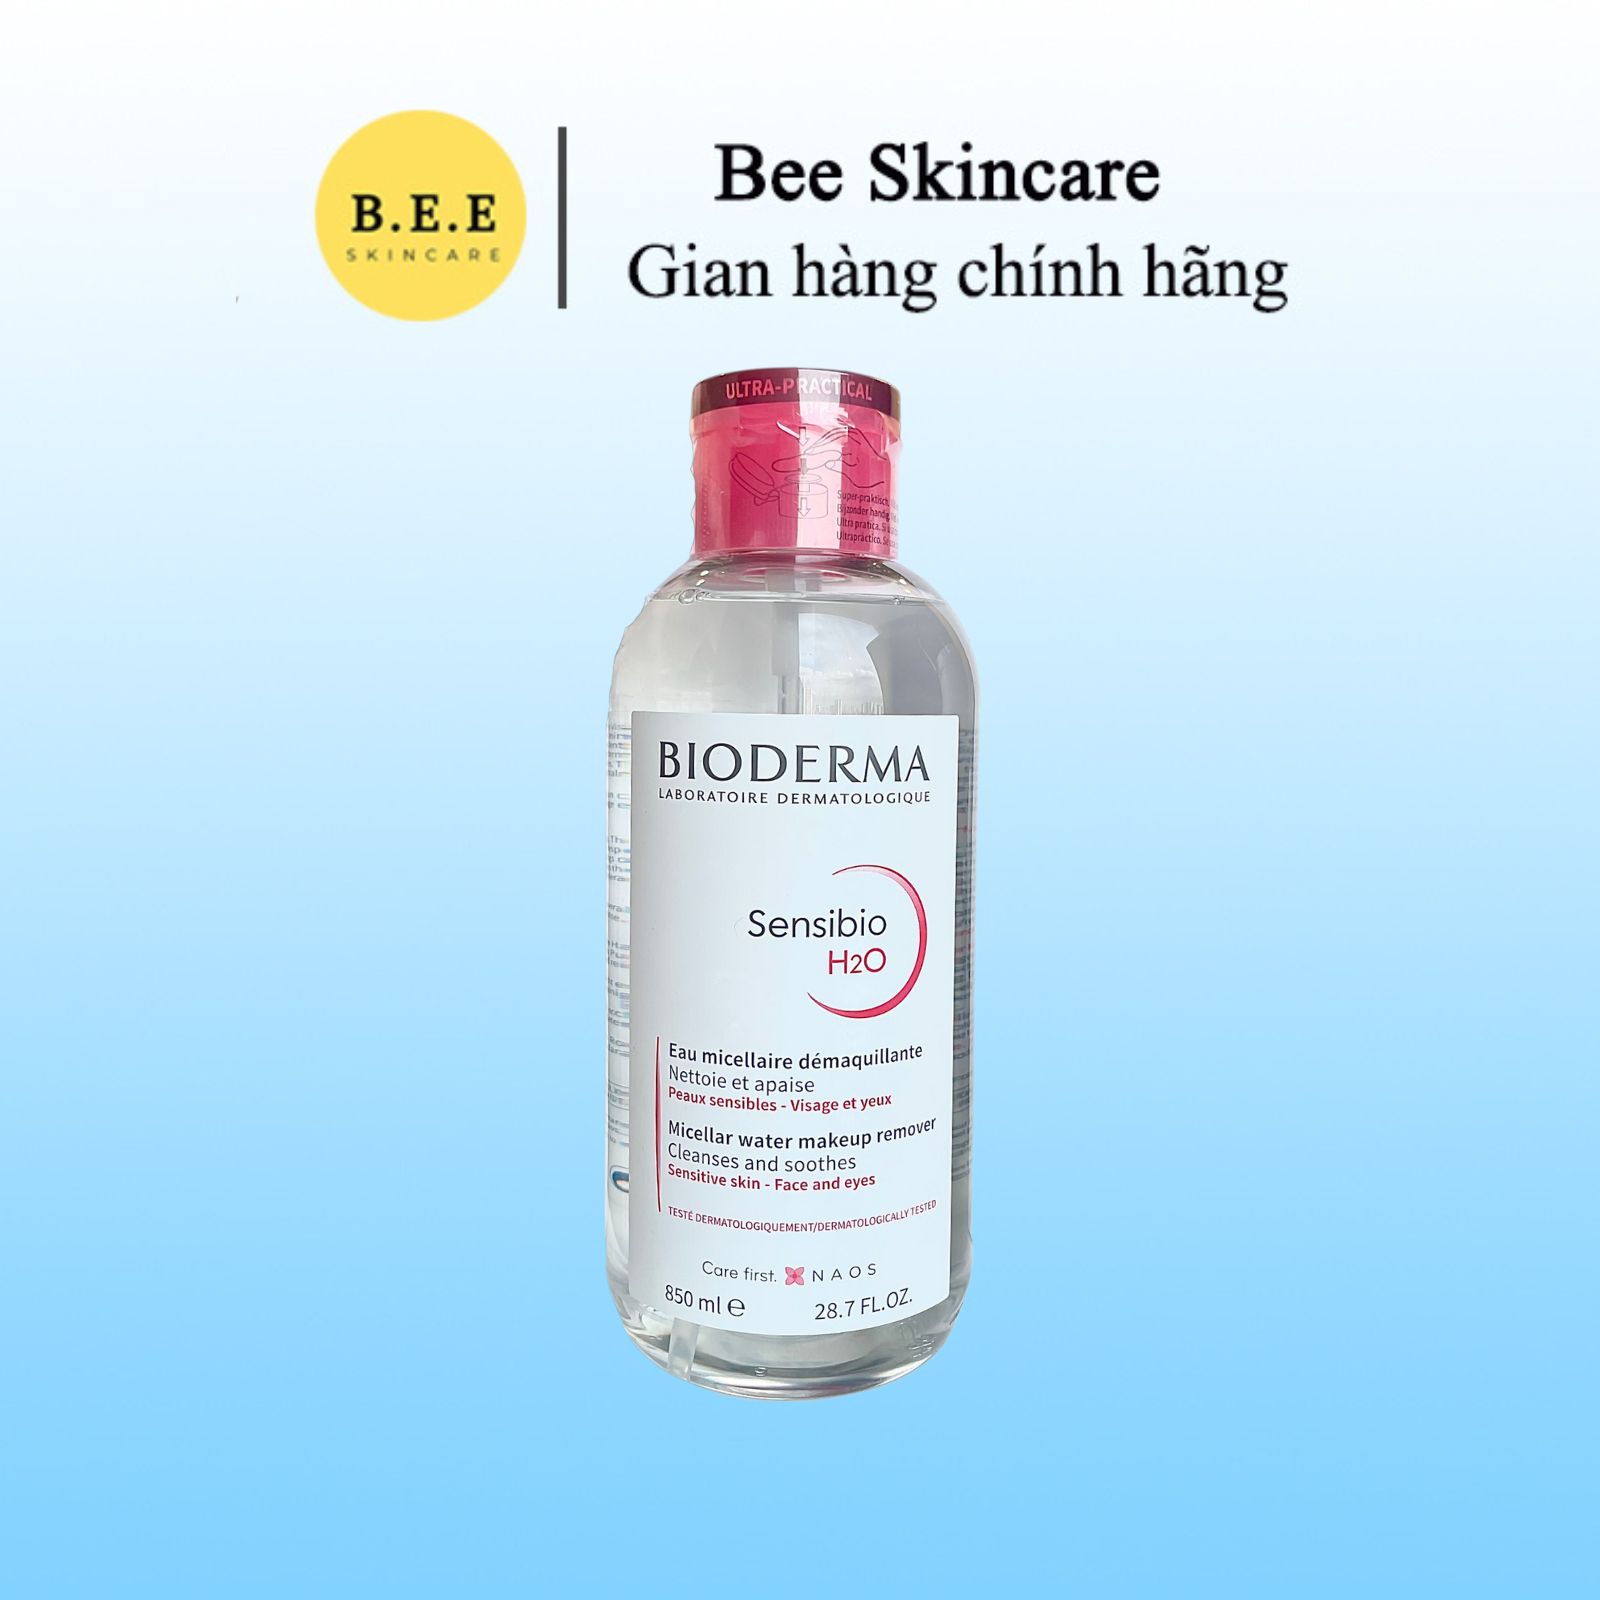 Nước Tẩy Trang Bioderma Hồng Nắp Nhấn 850ml Bee Skincare